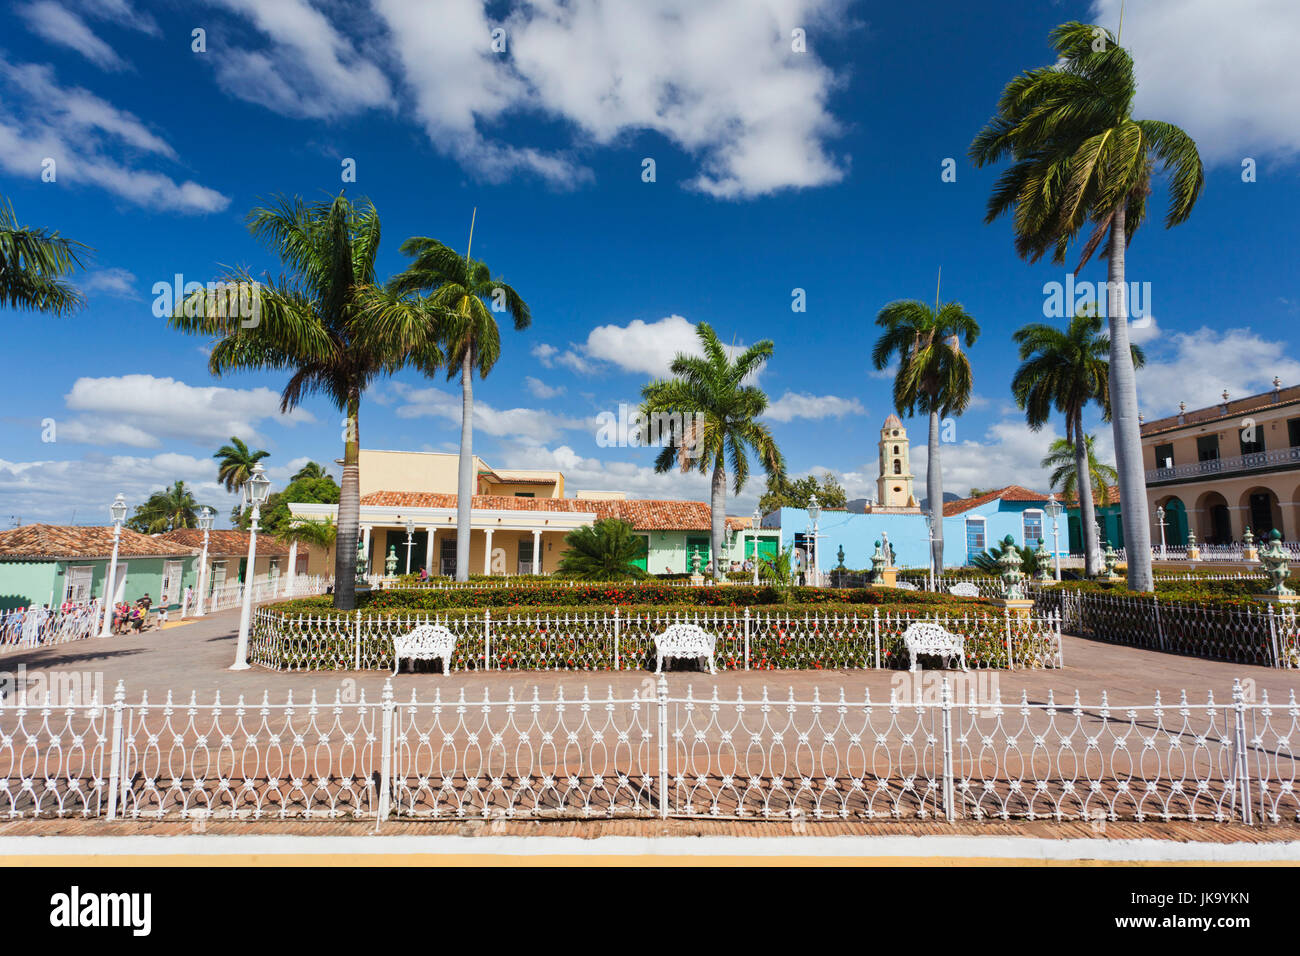 La province de Sancti Spiritus, Cuba, Trinidad, Plaza Mayor Banque D'Images